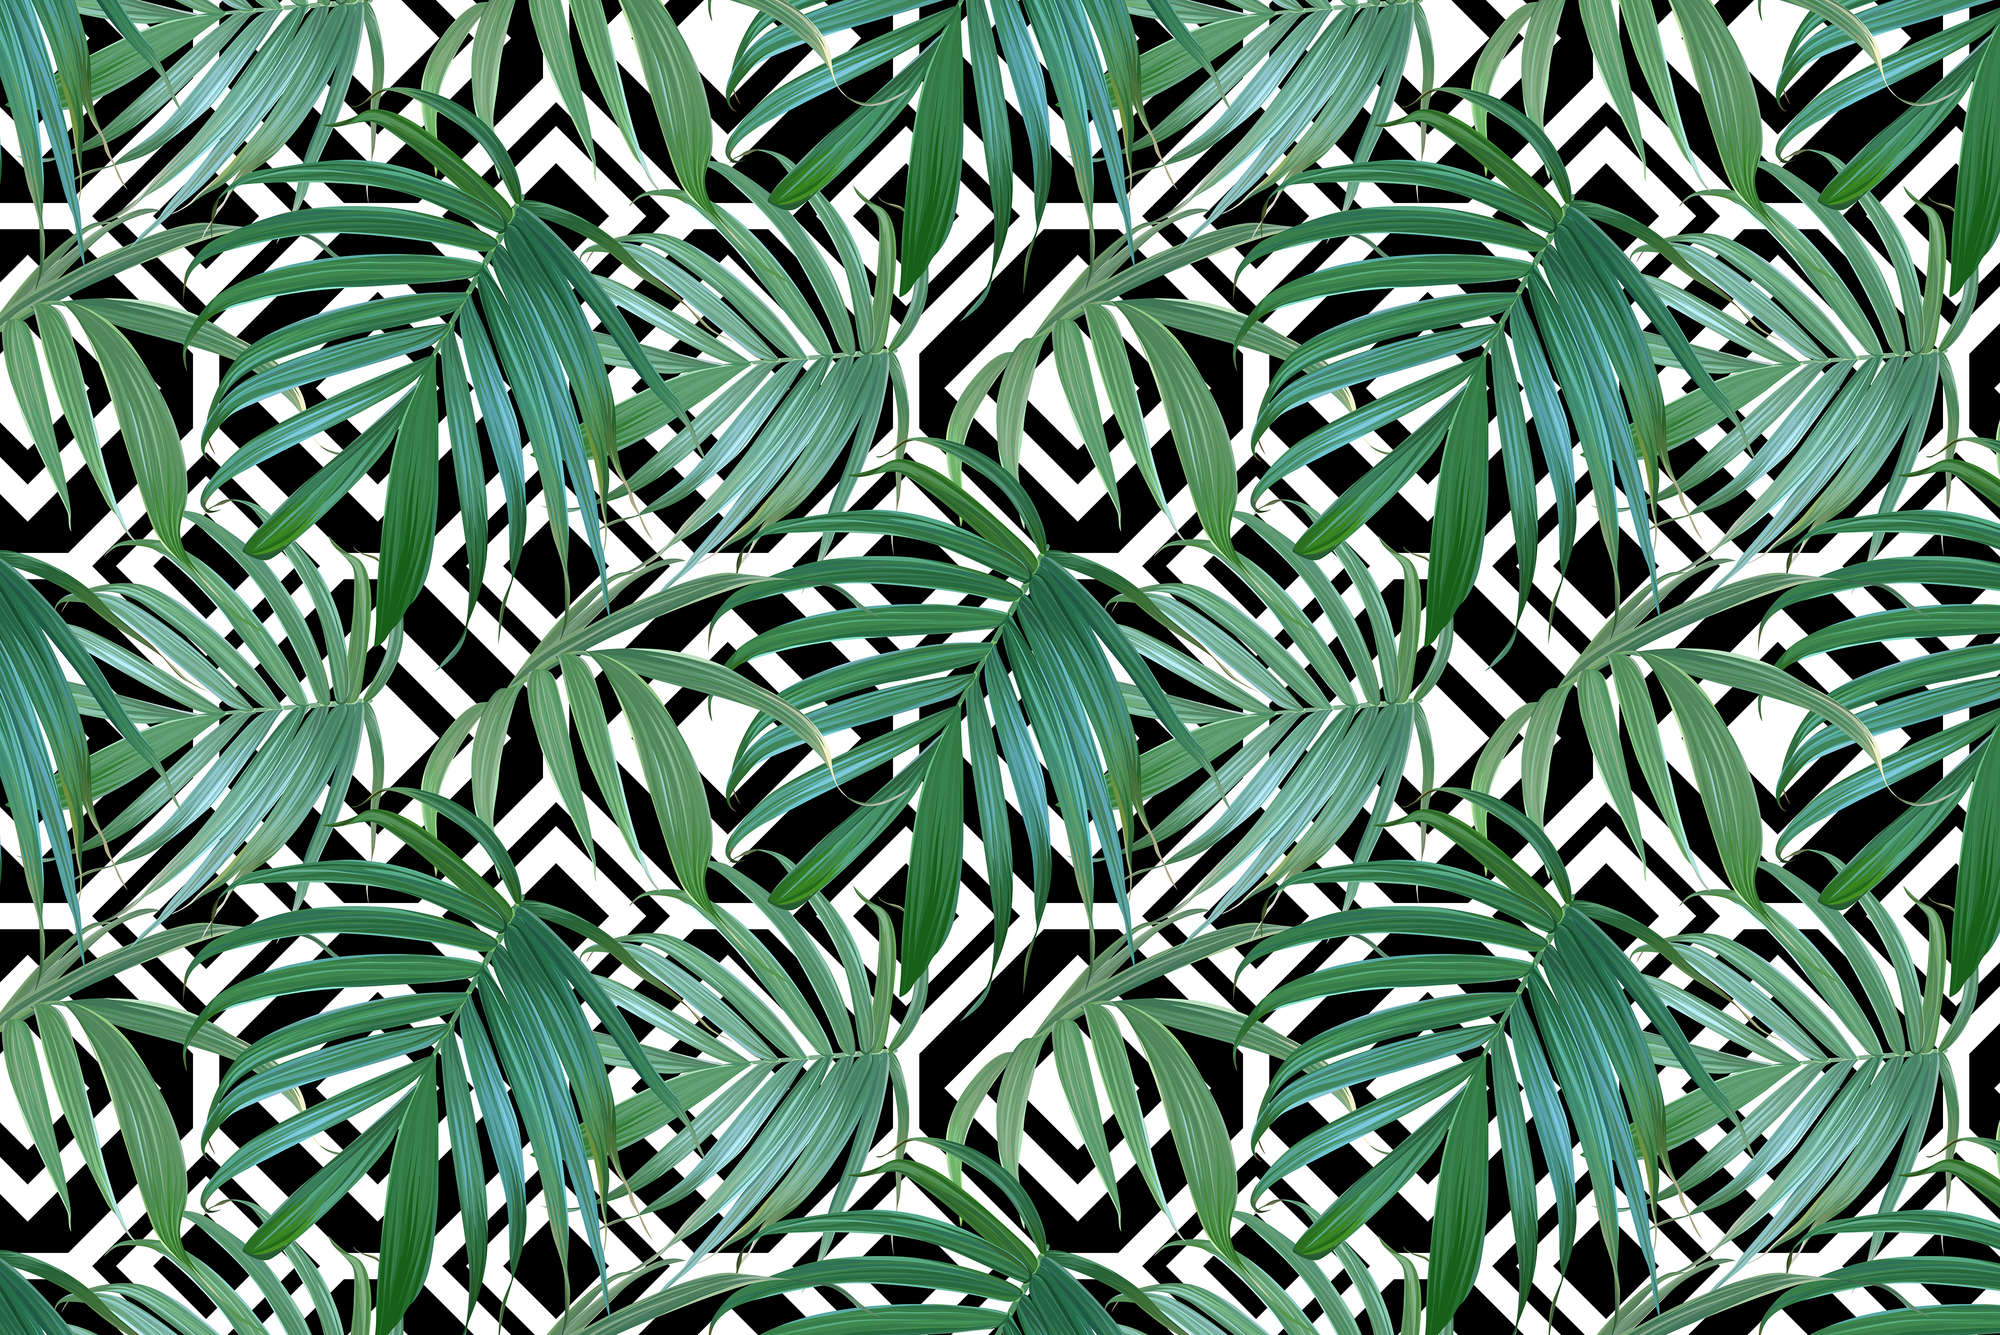             Grafik Fototapete Dschungel Pflanzen vor Schwarz Weiß Grafik auf Matt Glattvlies
        